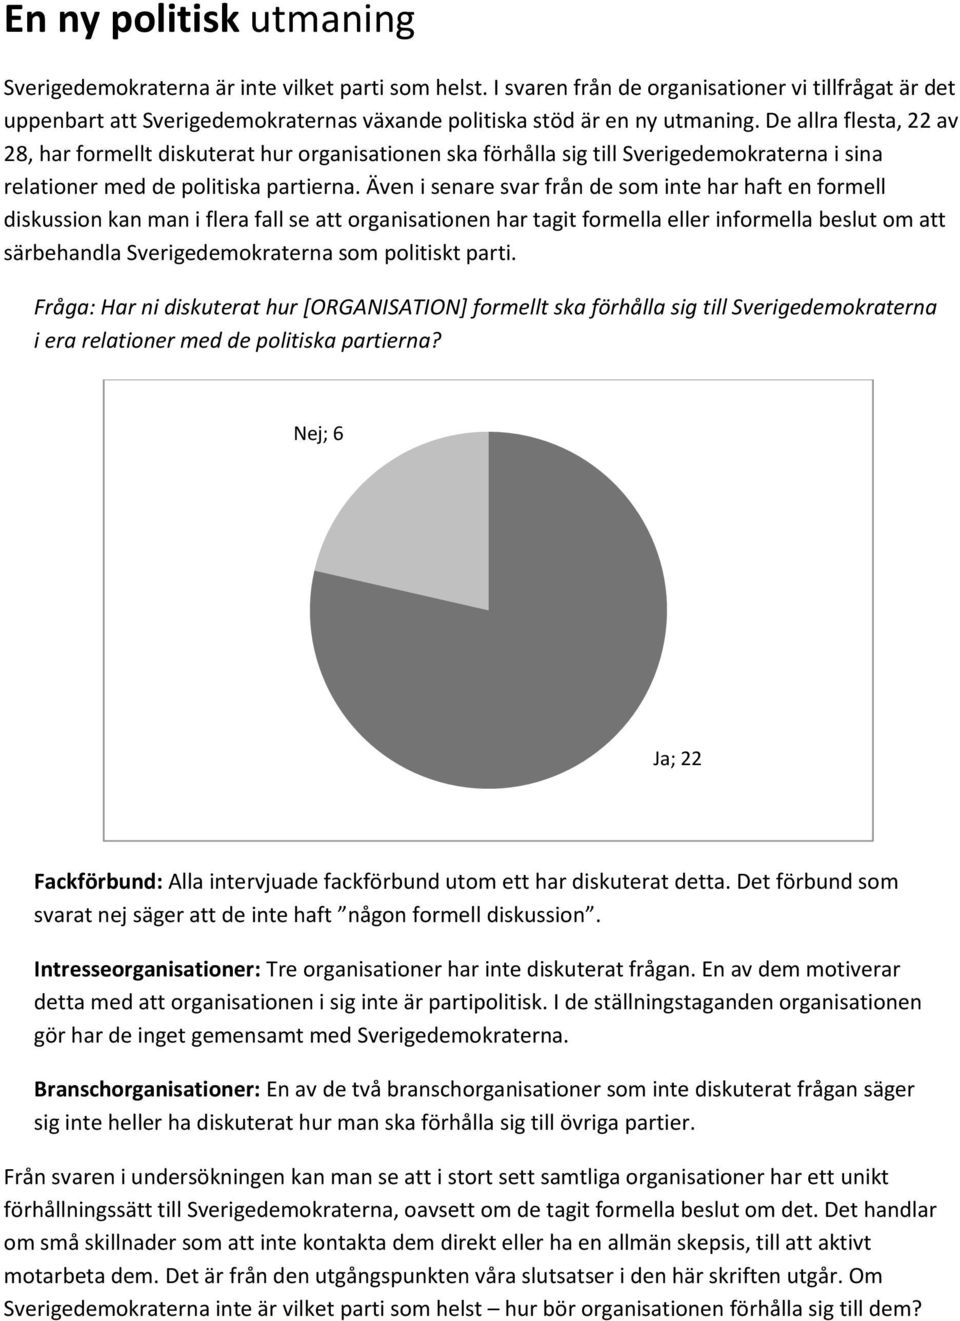 De allra flesta, 22 av 28, har formellt diskuterat hur organisationen ska förhålla sig till Sverigedemokraterna i sina relationer med de politiska partierna.